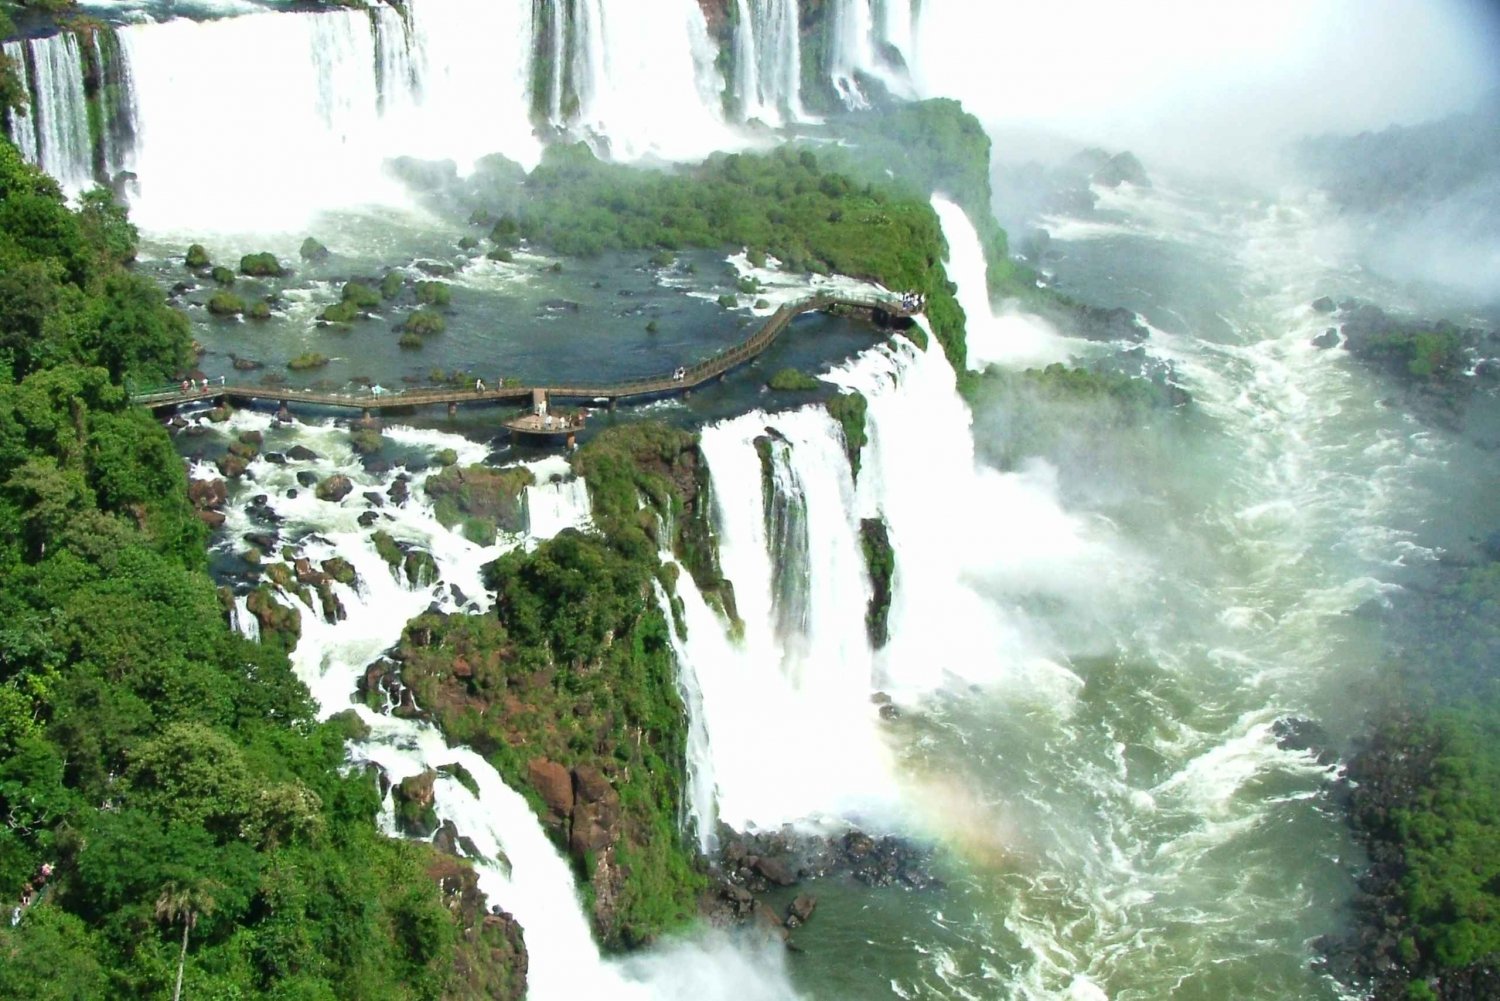 Privado - Um dia maravilhoso nas Cataratas do Iguaçu do lado argentino